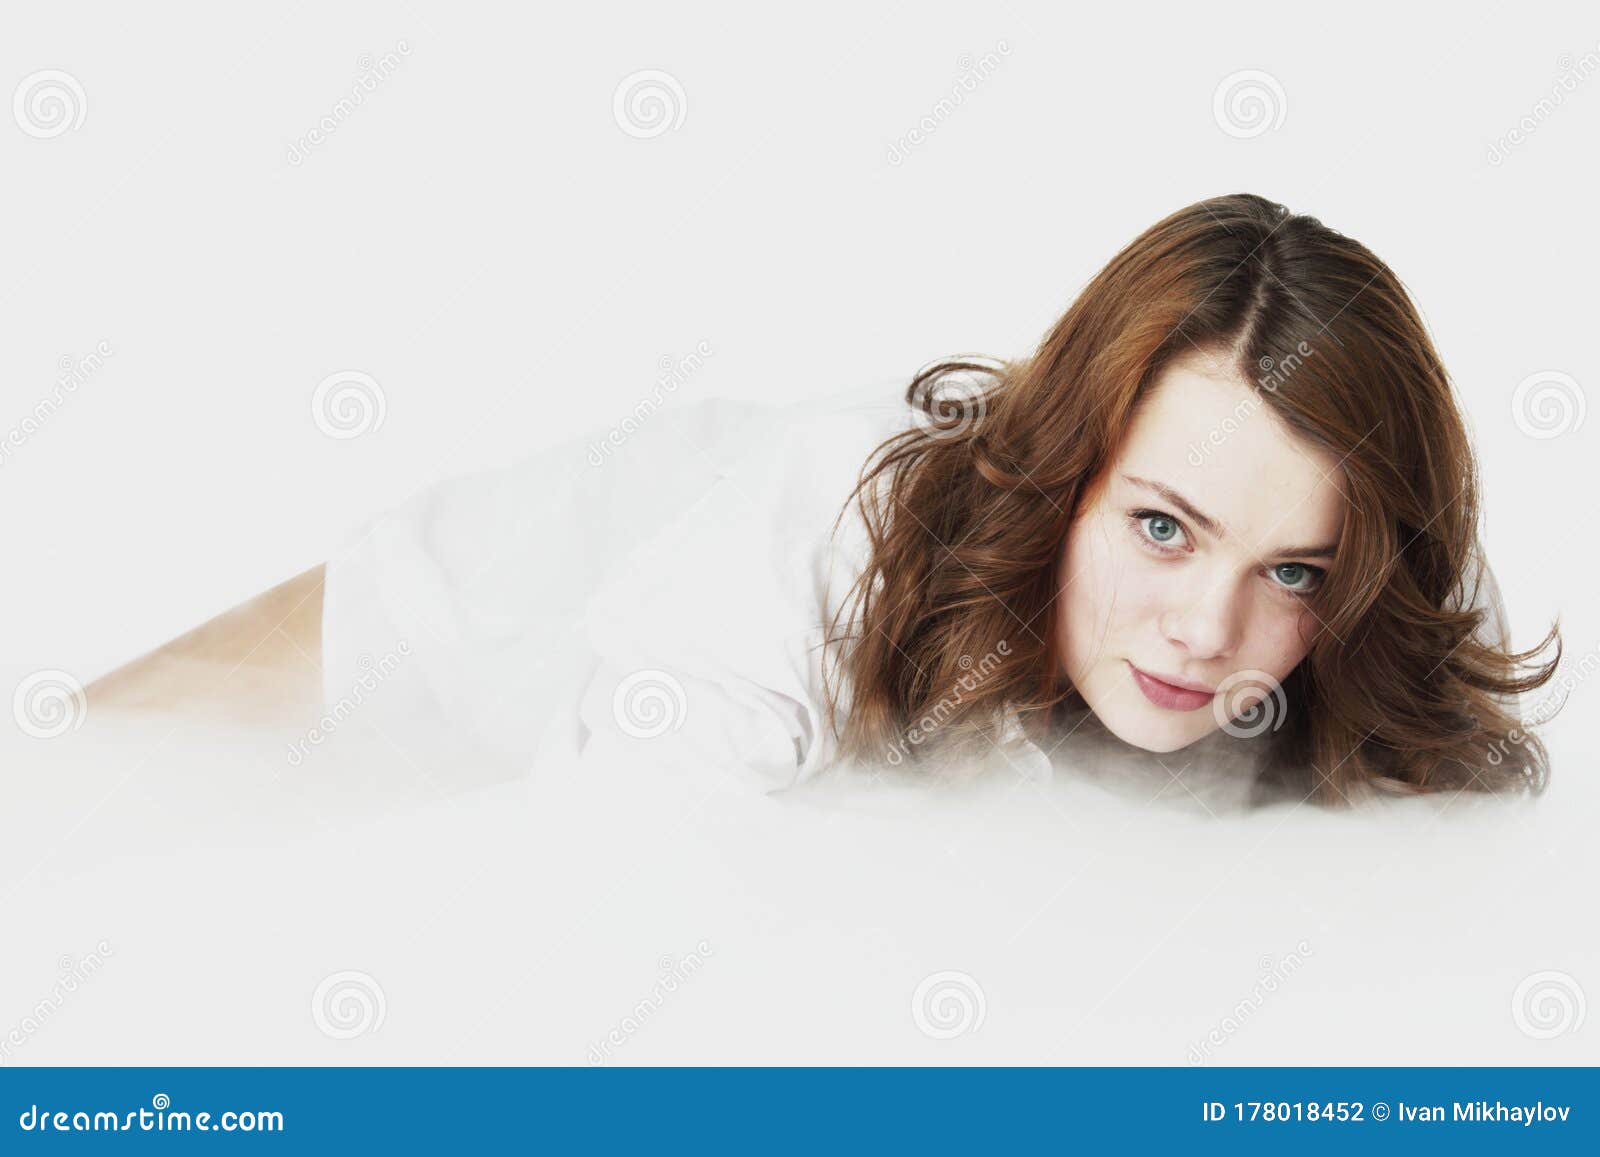 Heaven girl on cloud stock photo. Image of female, girl - 17